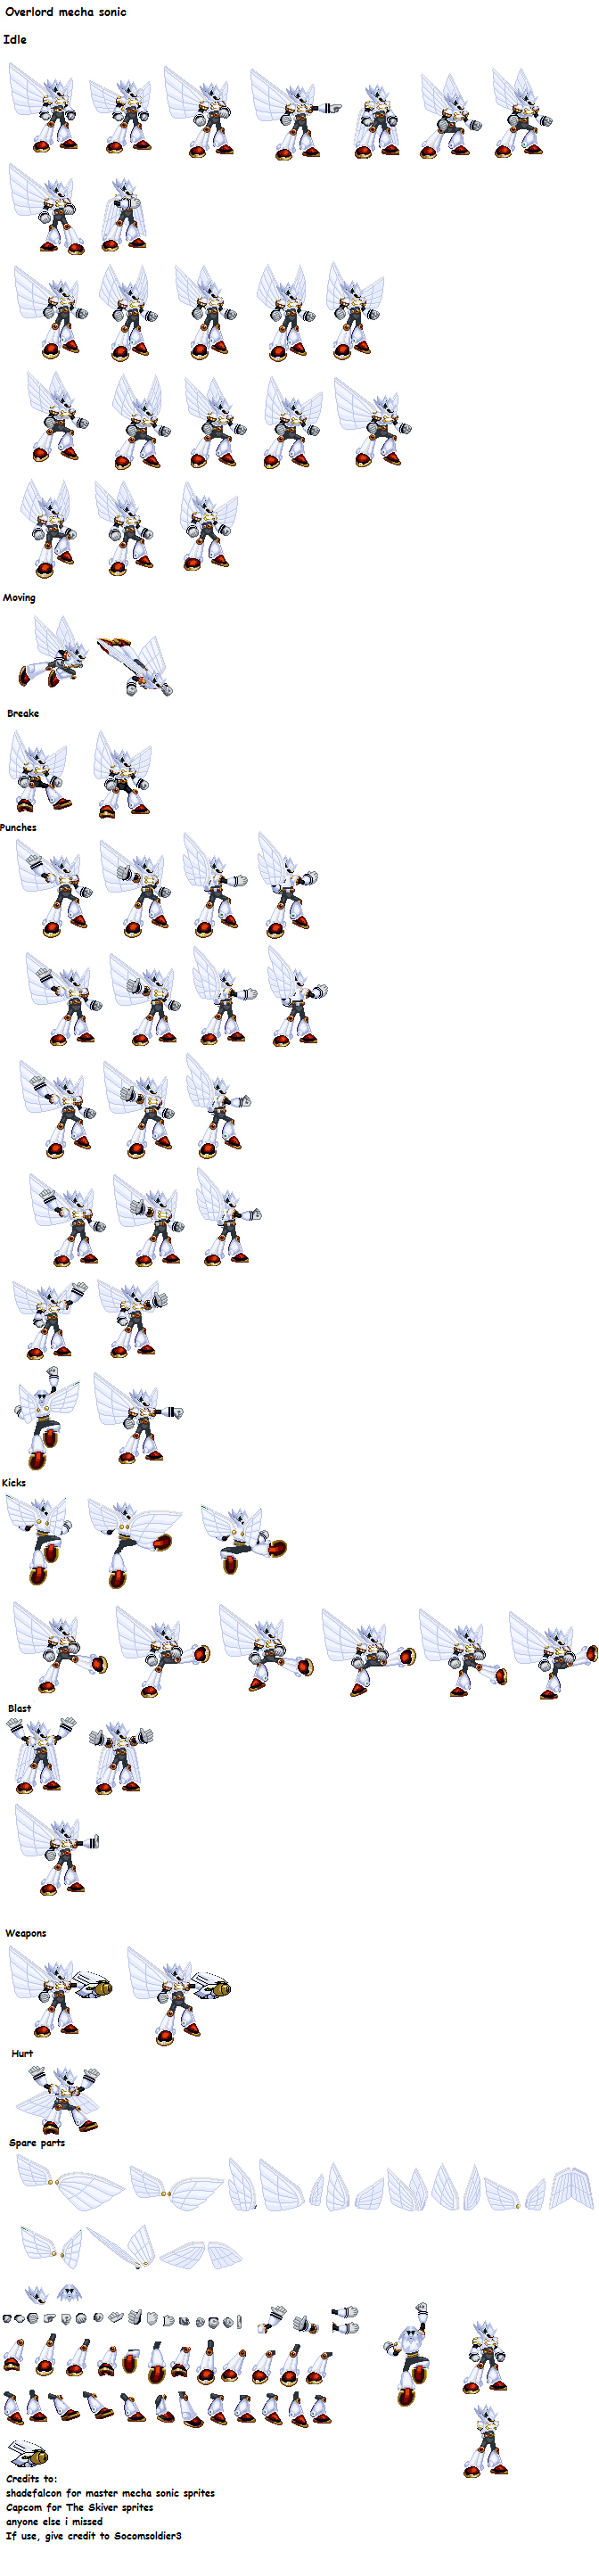 Hyper Sonic's forms by fnafan88888888 on DeviantArt